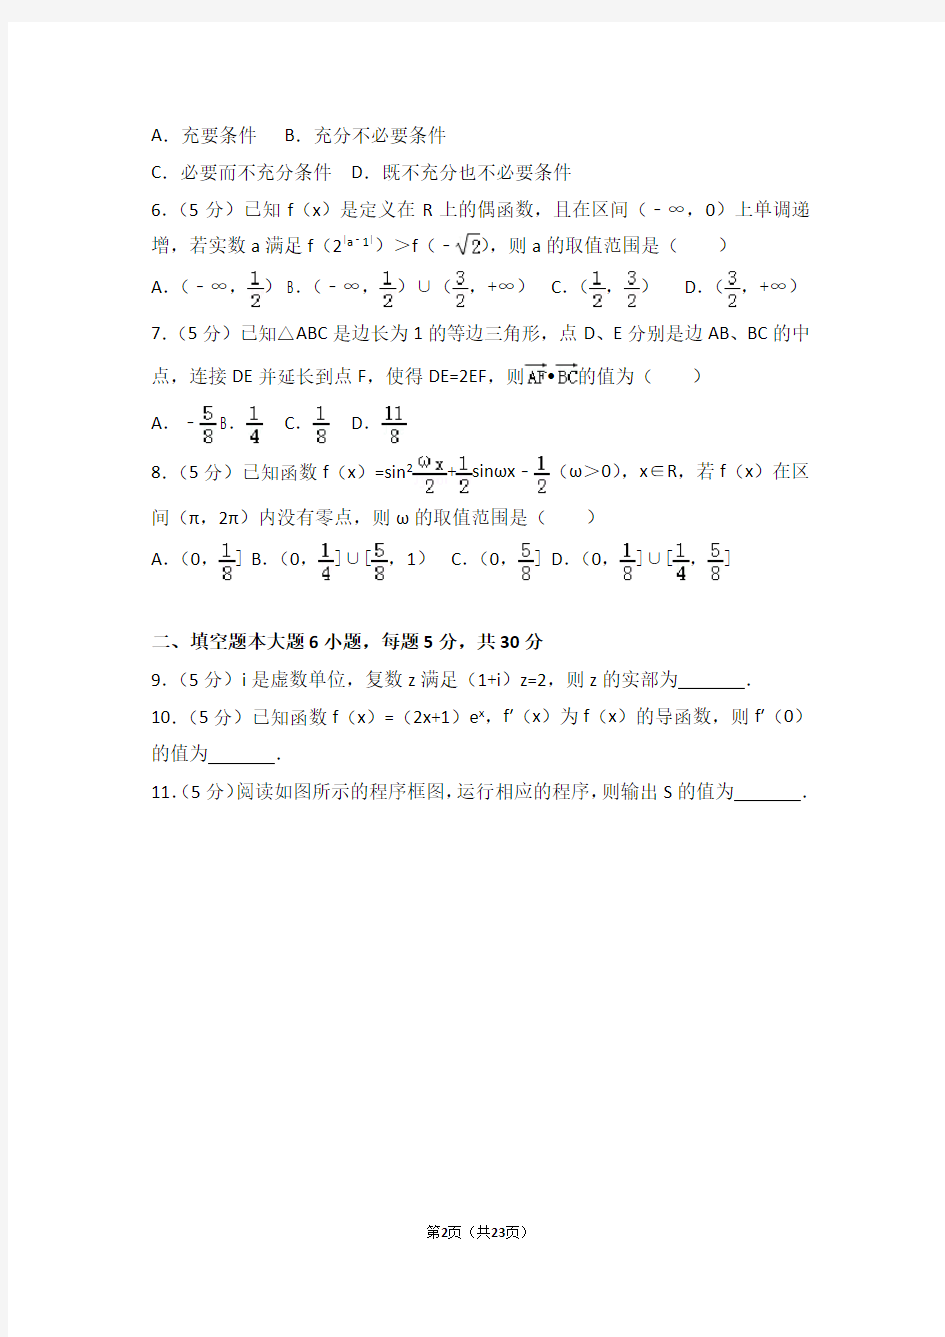 2016年天津市高考数学试卷文科(高考真题)